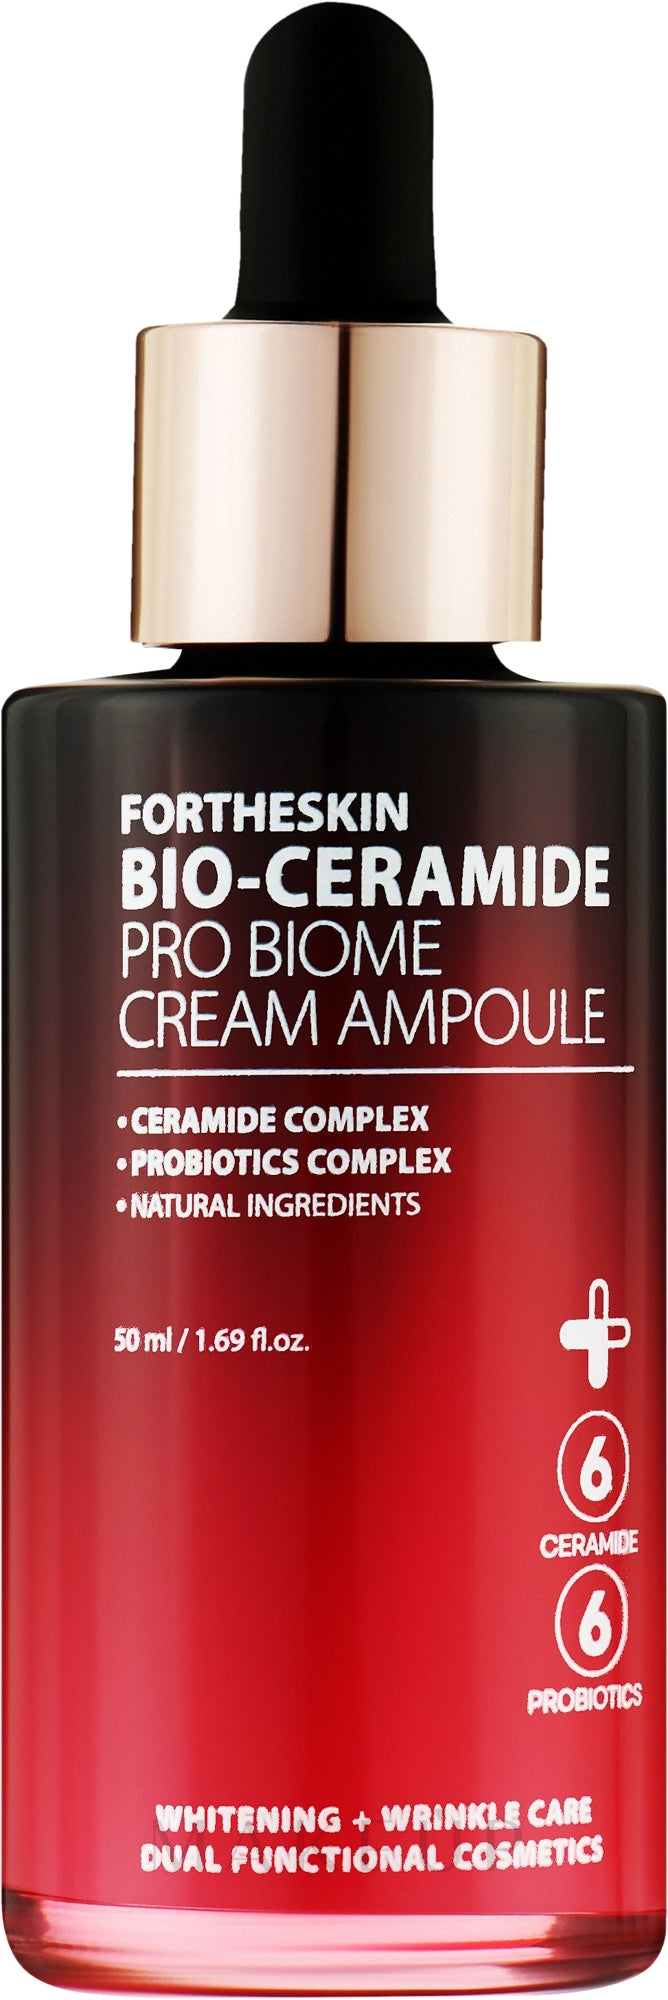 Fortheskin Bio-Ceramide Pro Biome Cream Ampoule 50ml